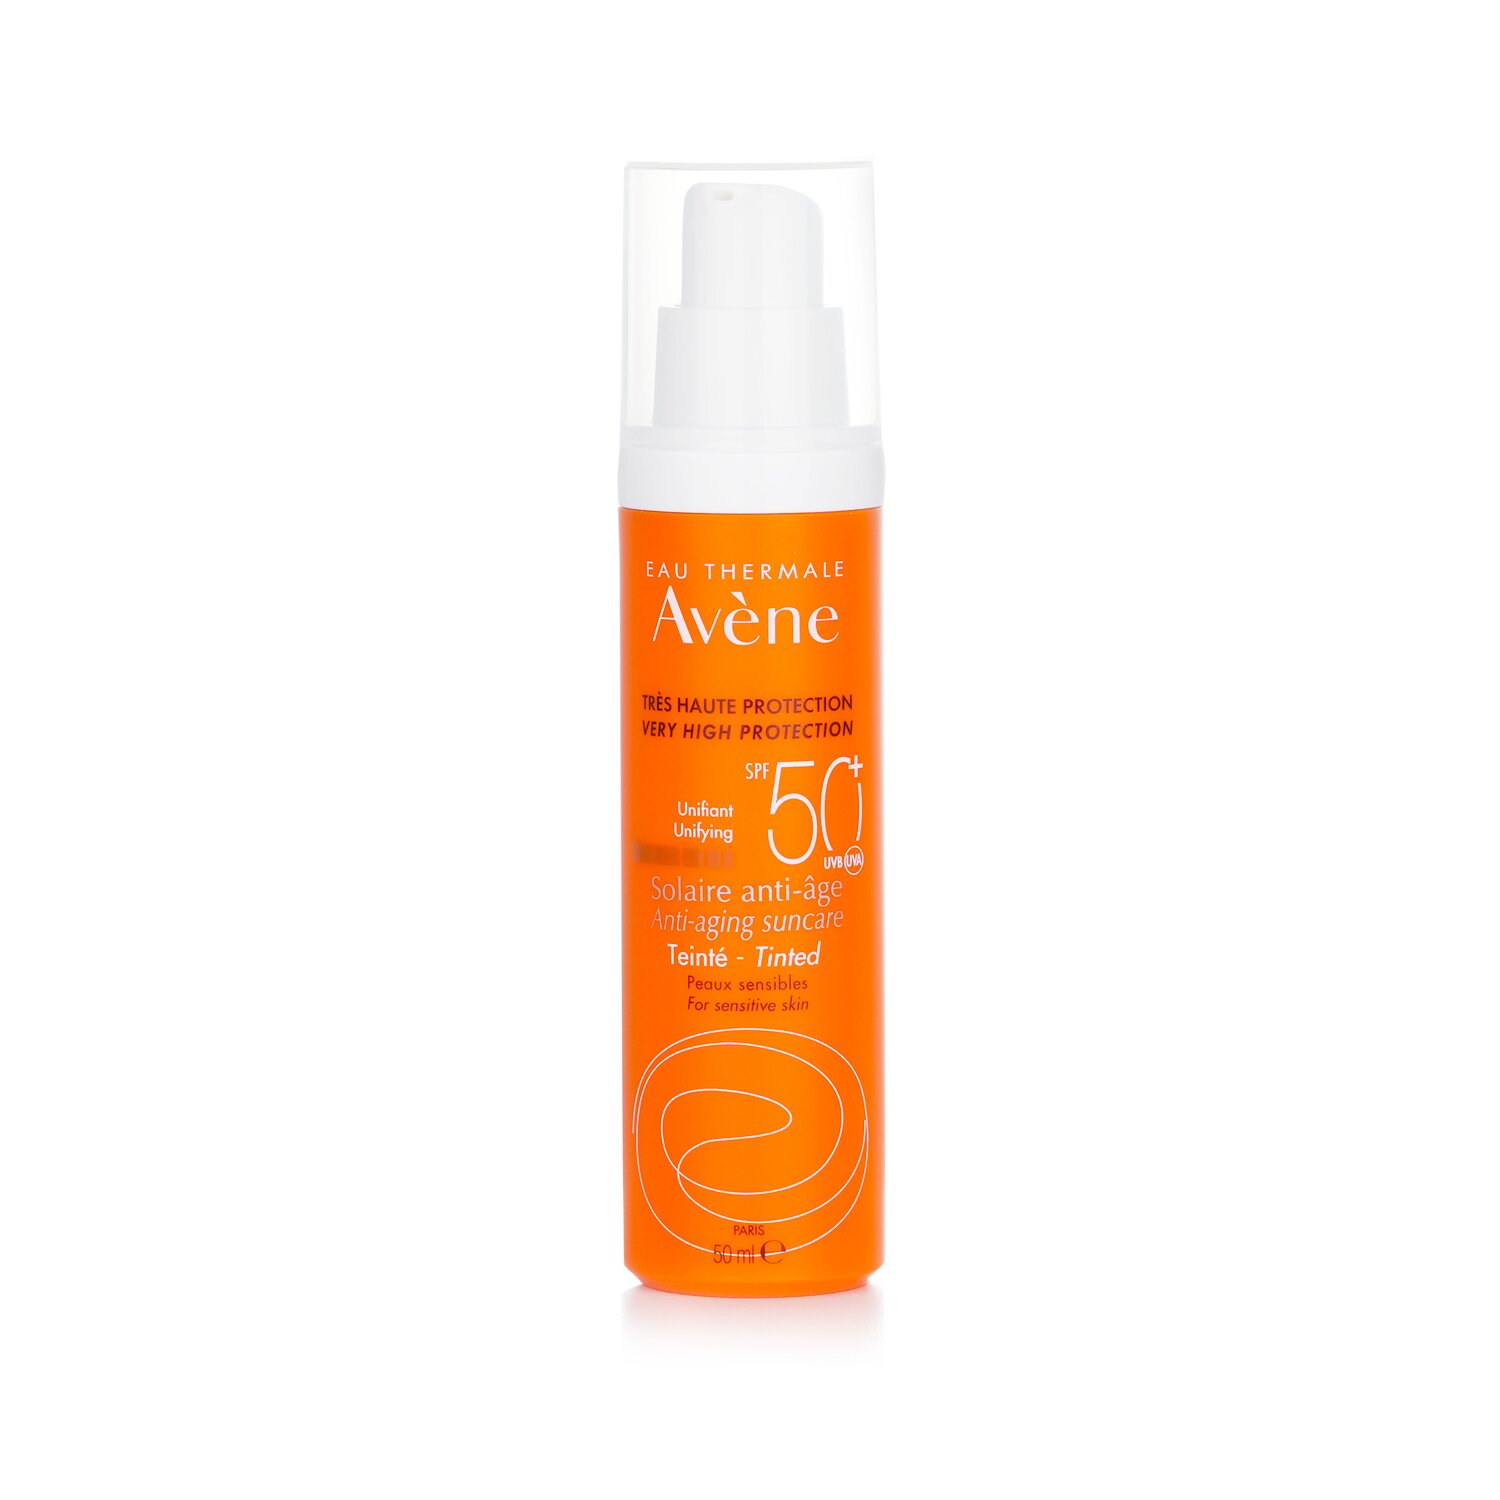 雅漾 Avene - 非常高的保護 Unifying 有色抗衰老防曬霜 SPF 50 - 適合敏感肌膚